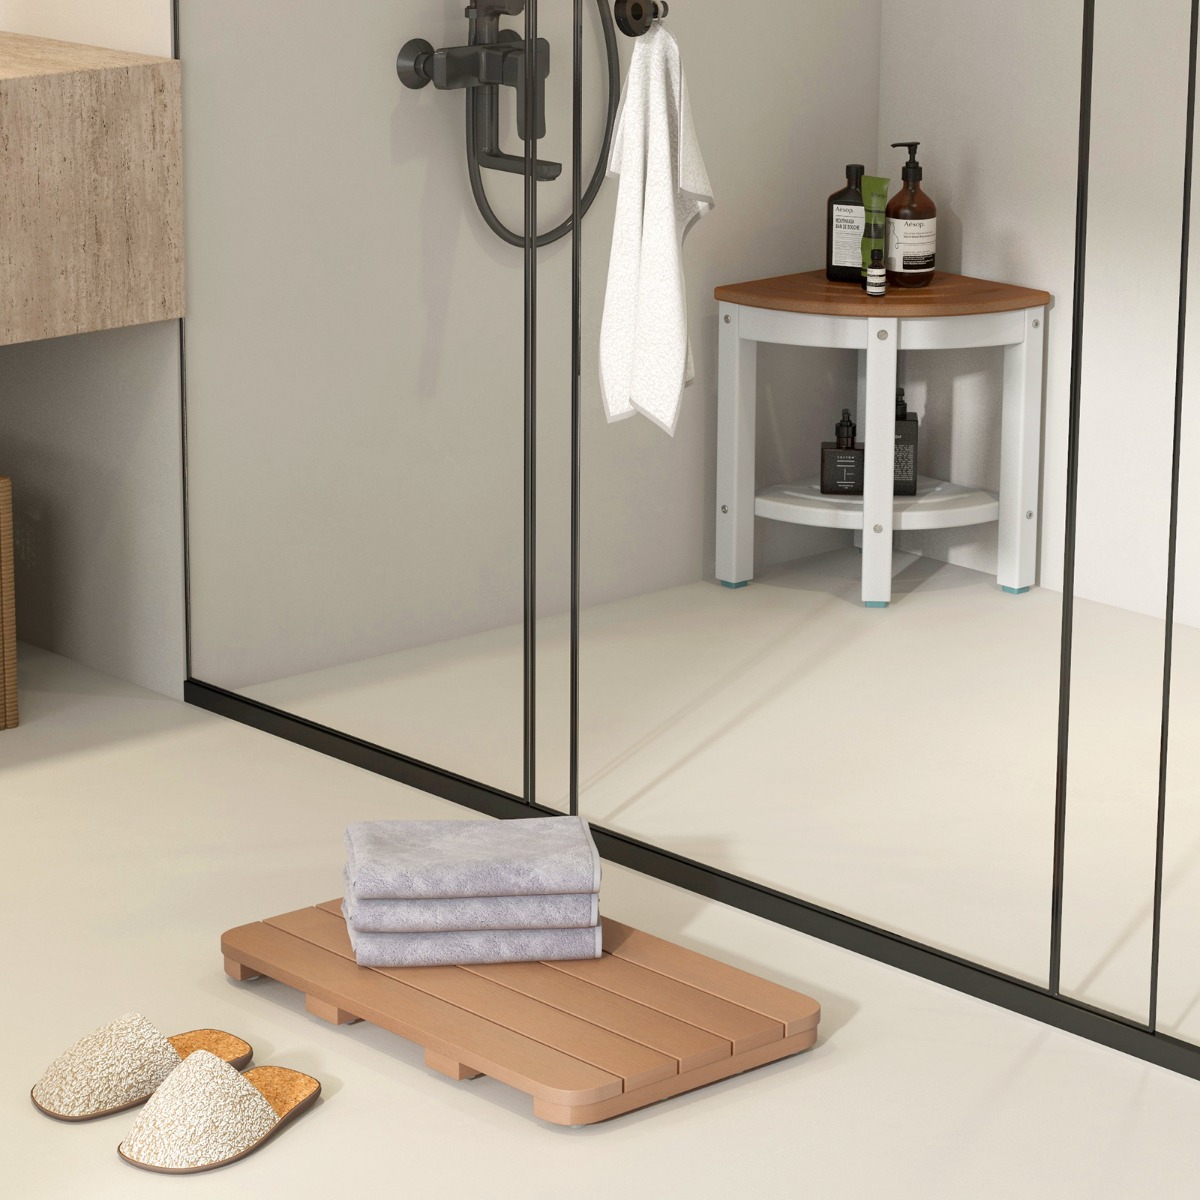 55 x 34 cm Toilettenmatte aus Hips Holz-Design Badematte bis 150kg Belastbar Badvorleger Braun von Costway